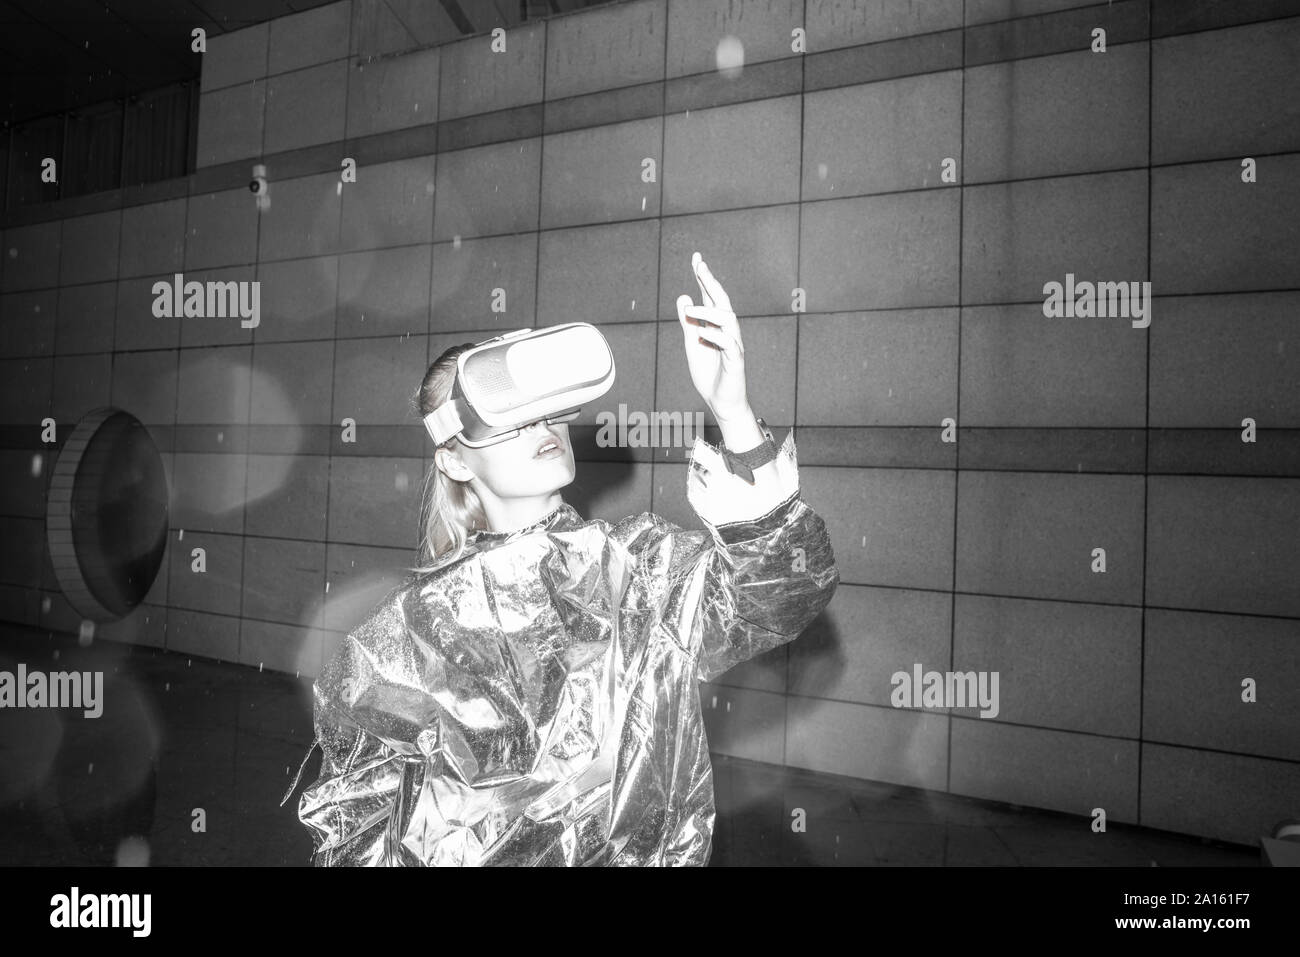 Fille en costume d'argent à la recherche à travers les lunettes de VR, regardant sa main Banque D'Images